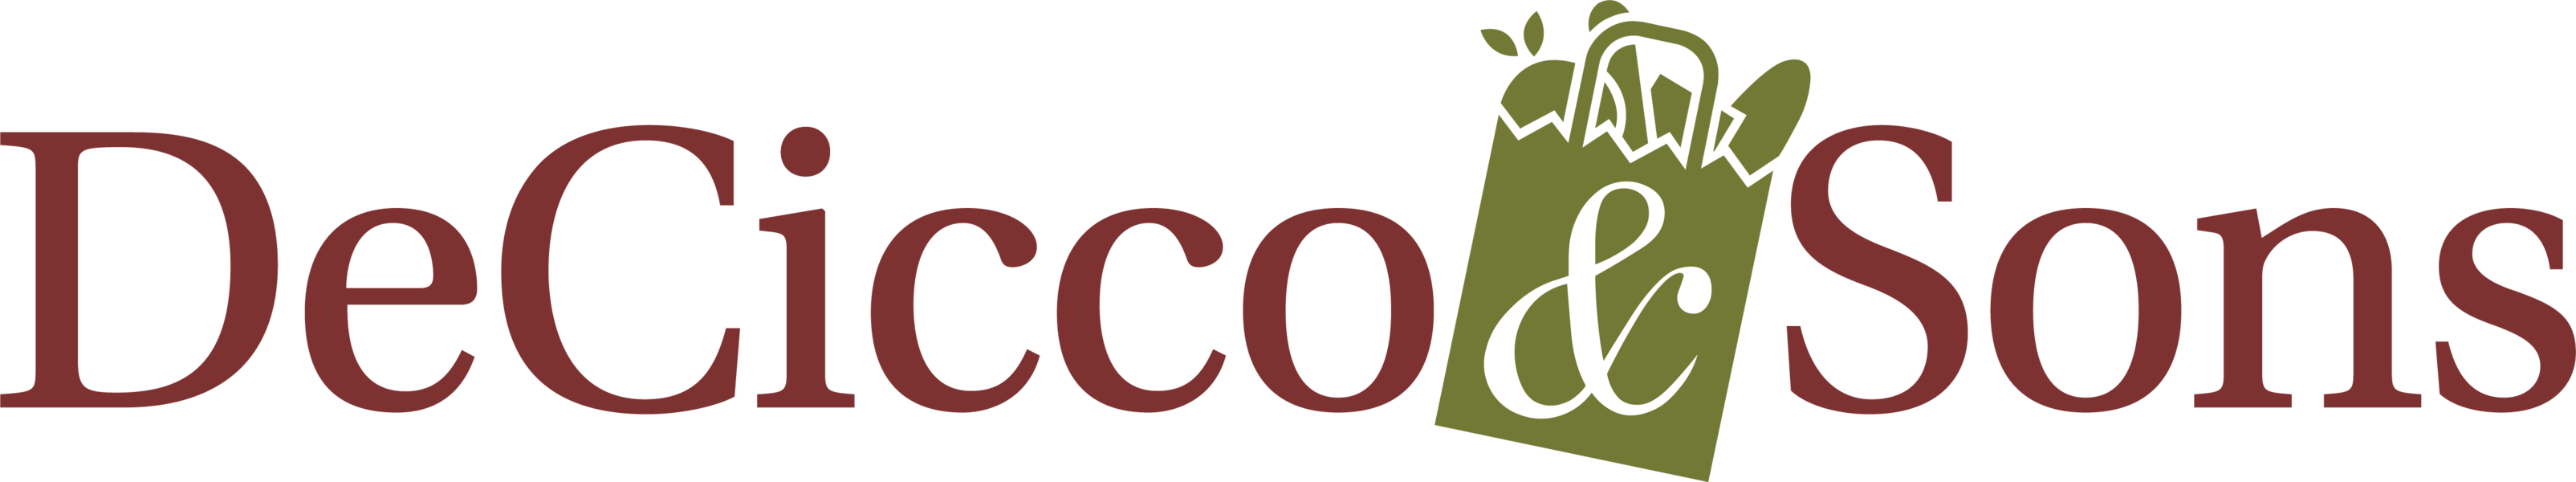 DeCicco & Sons logo